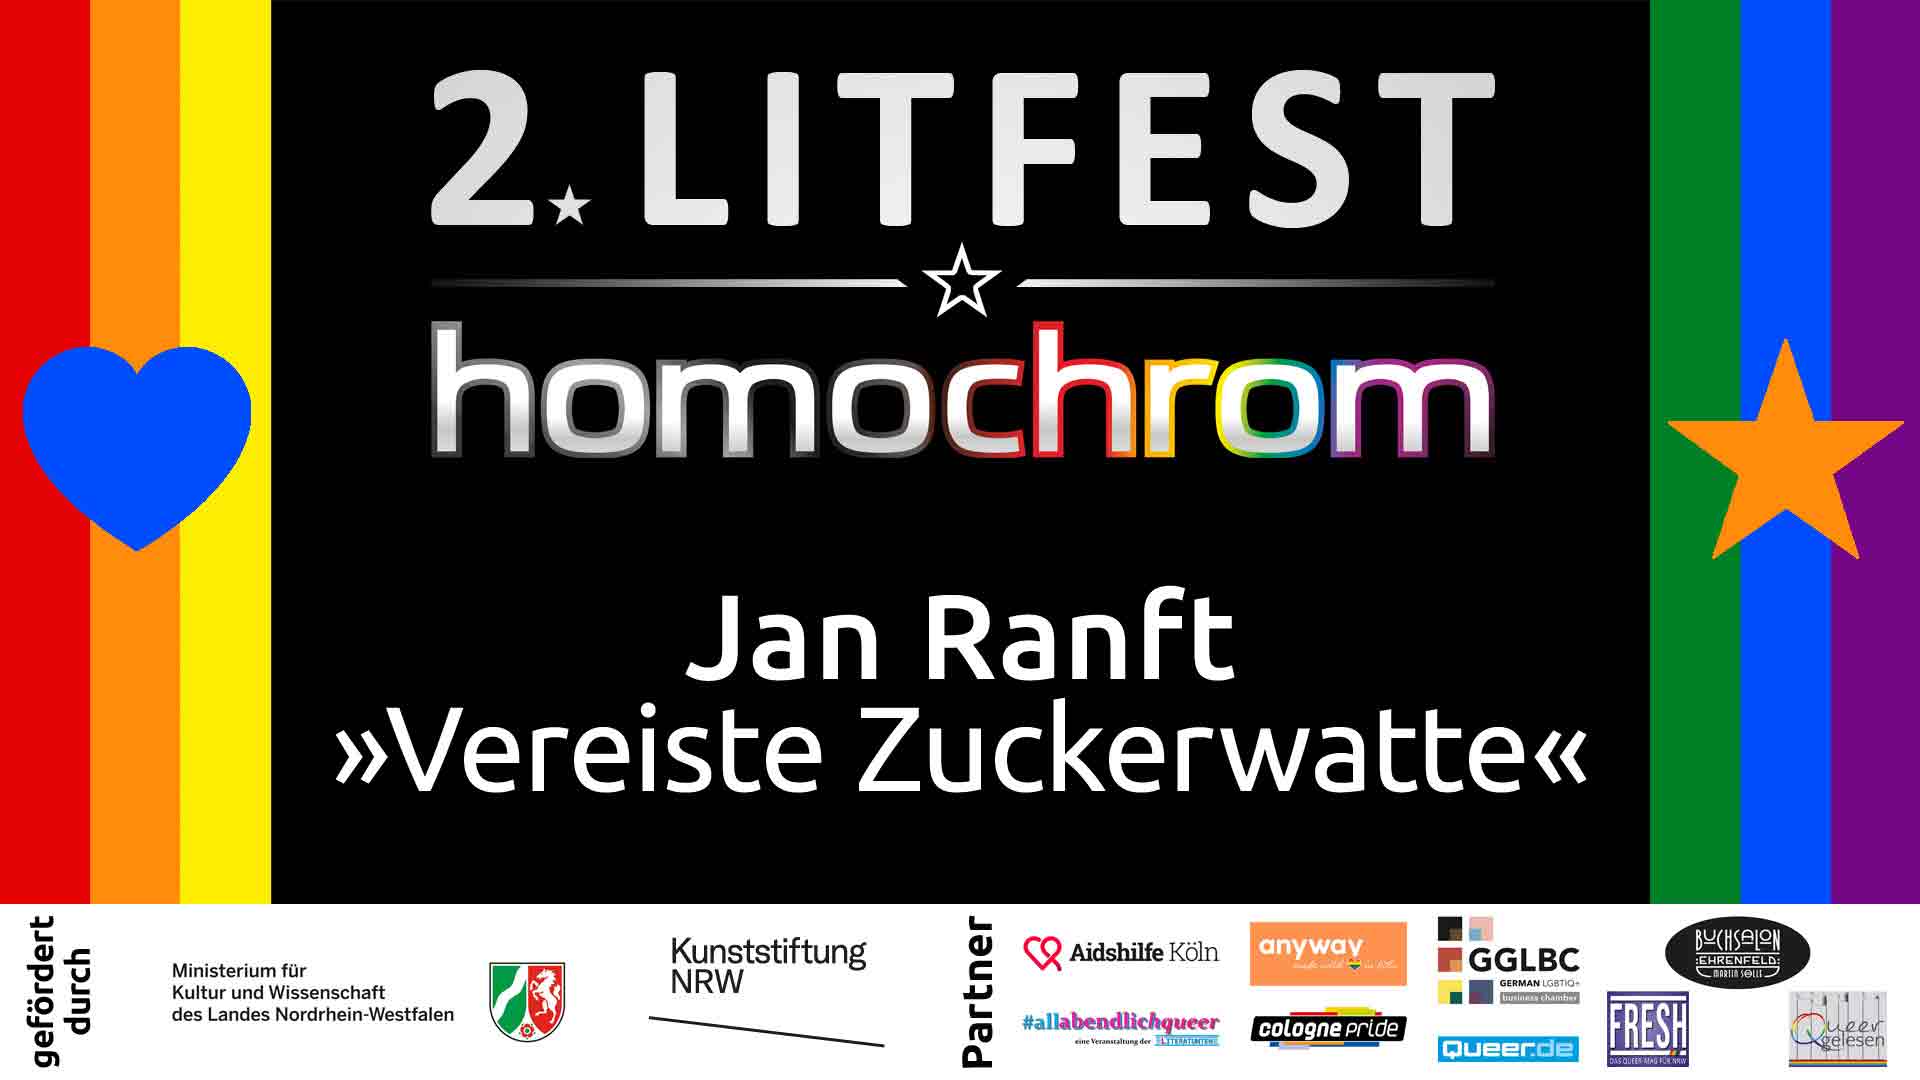 Youtube Video, Jan Ranft, 2. Litfest homochrom